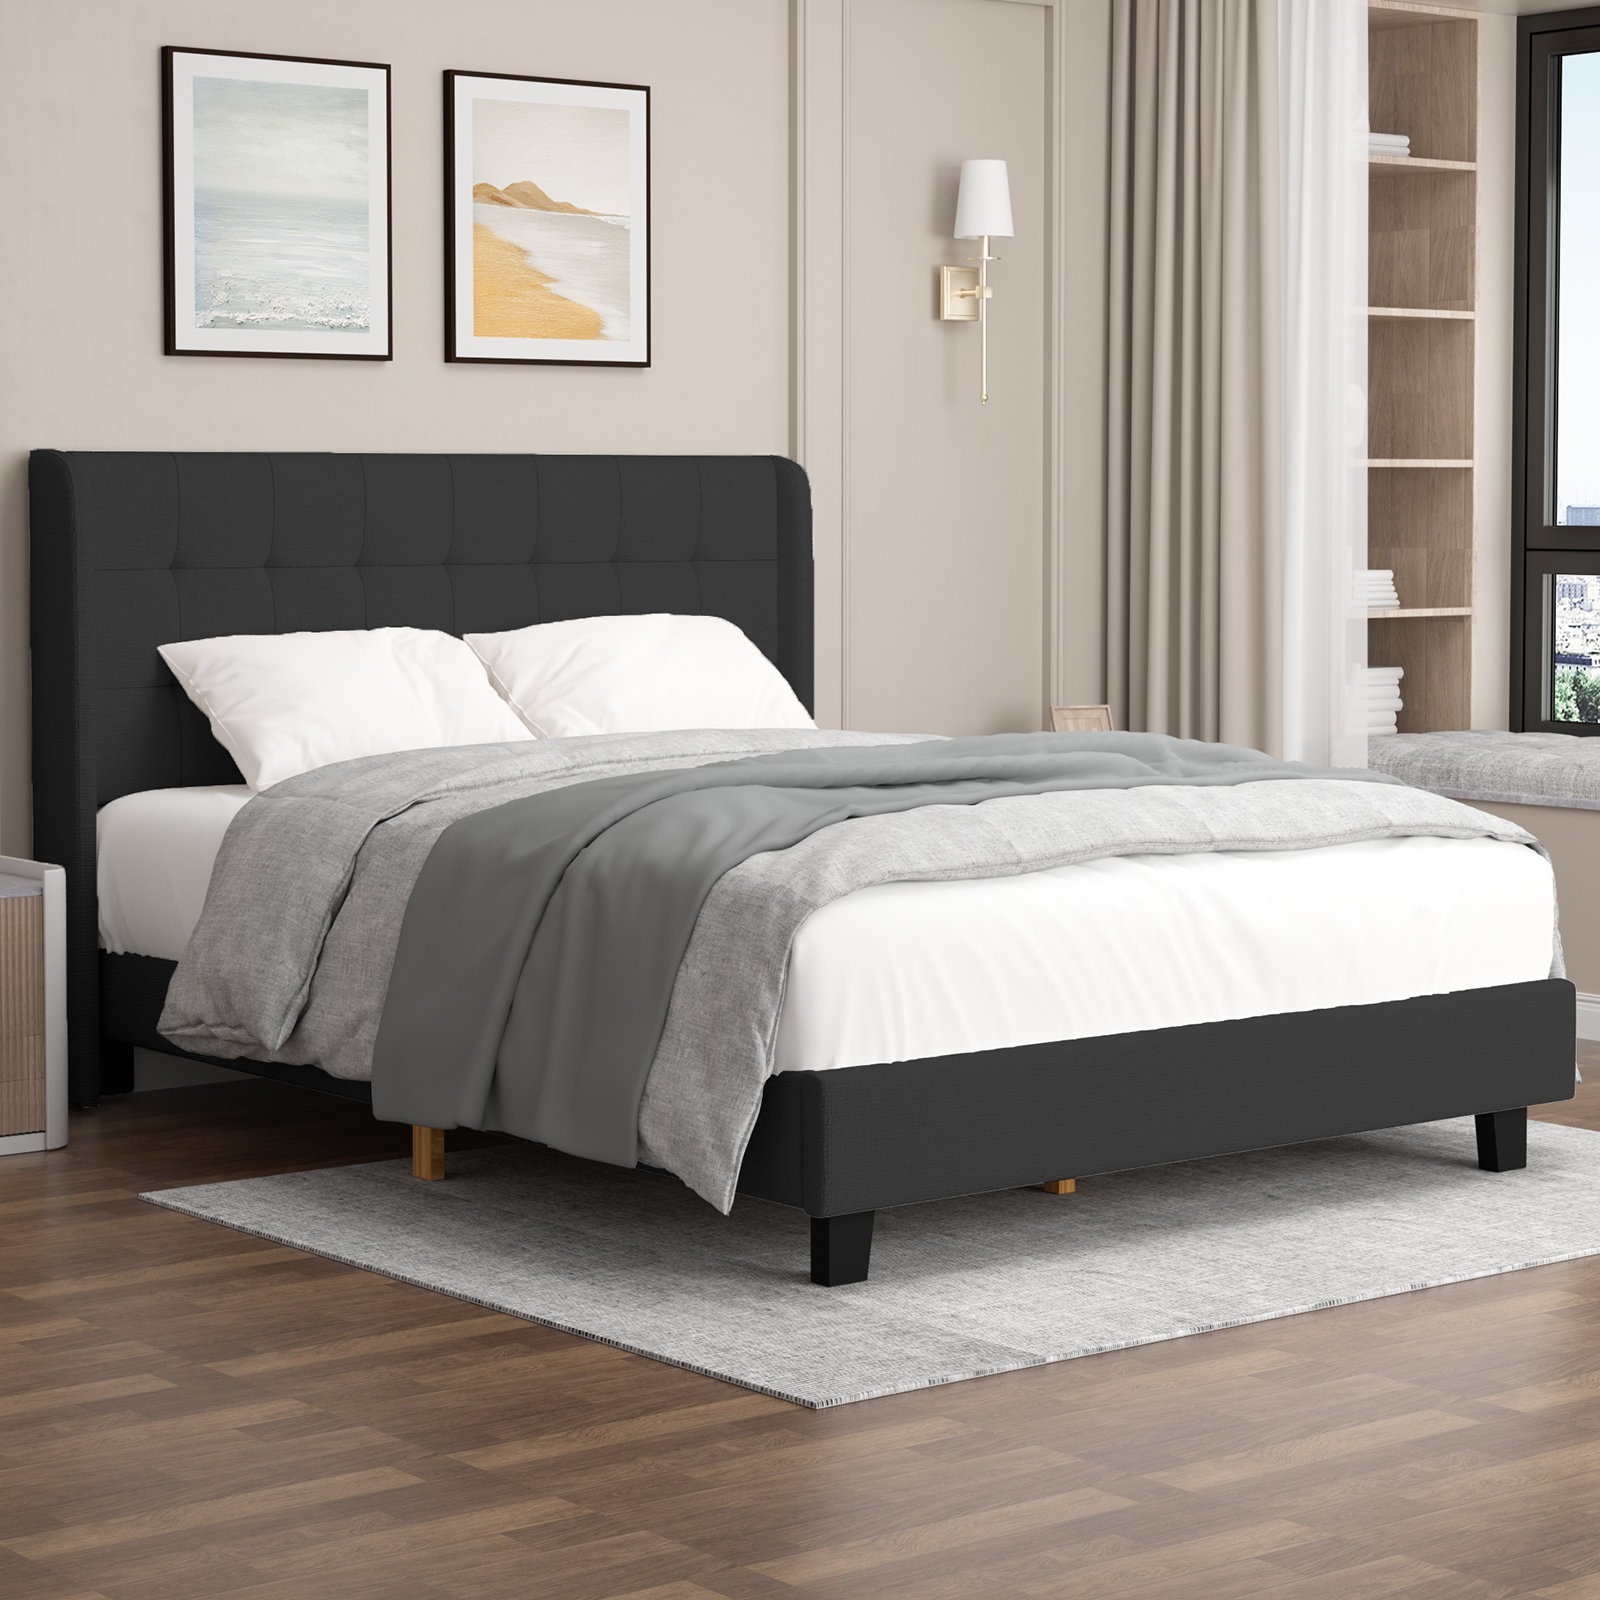 Gray Wood Frame Queen Size Linen Upholstered Platform Bed Frames